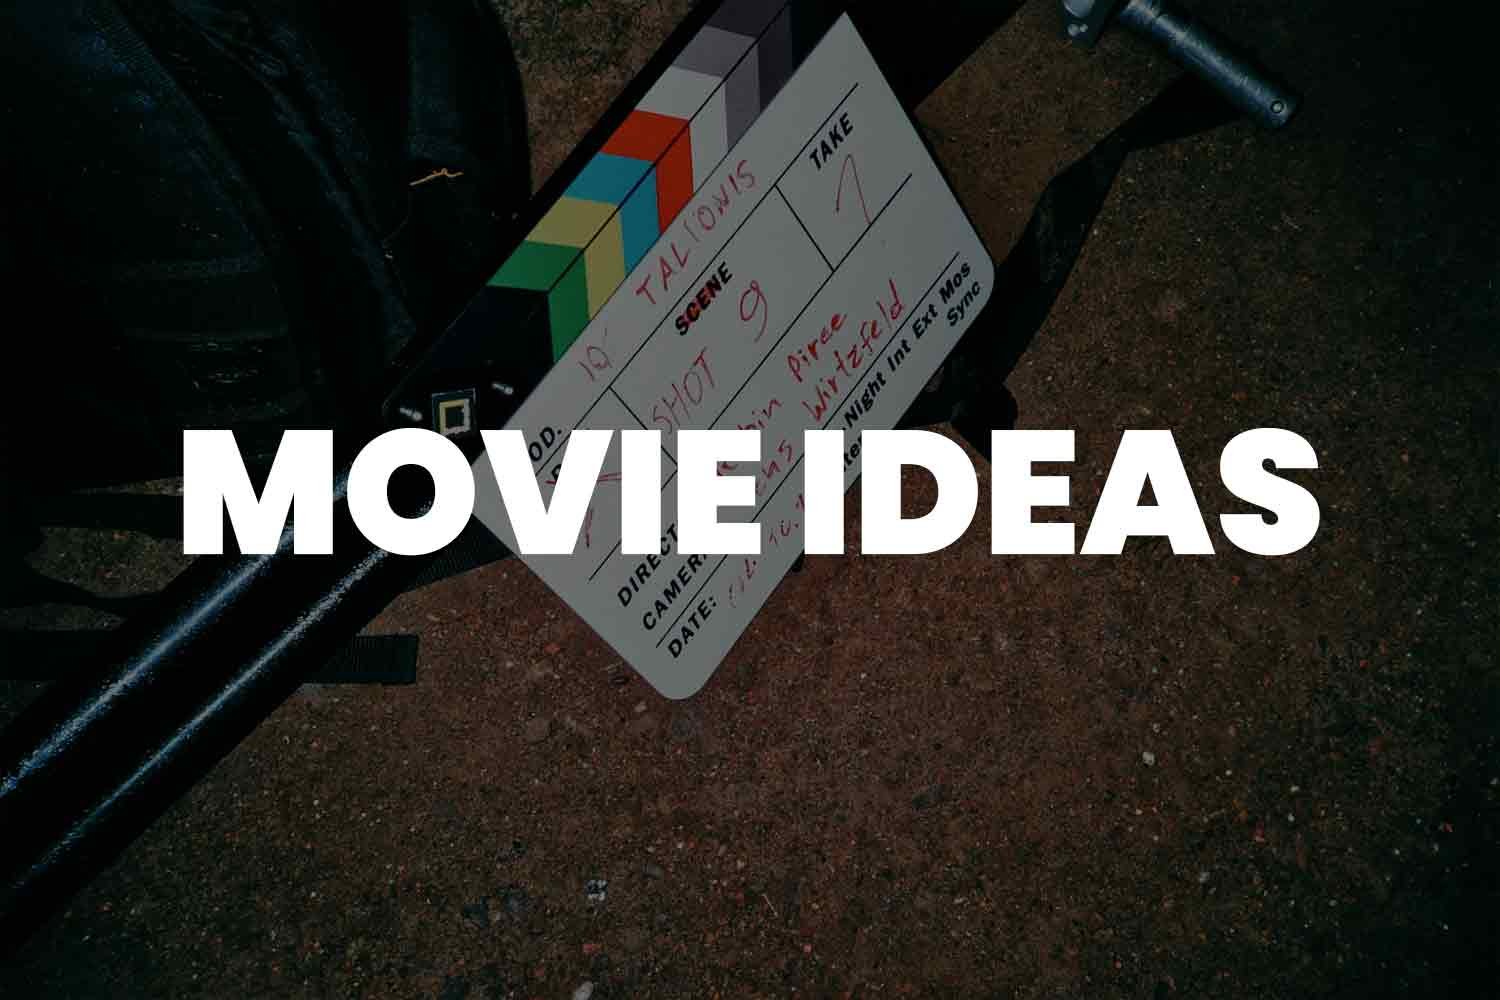 Movie ideas